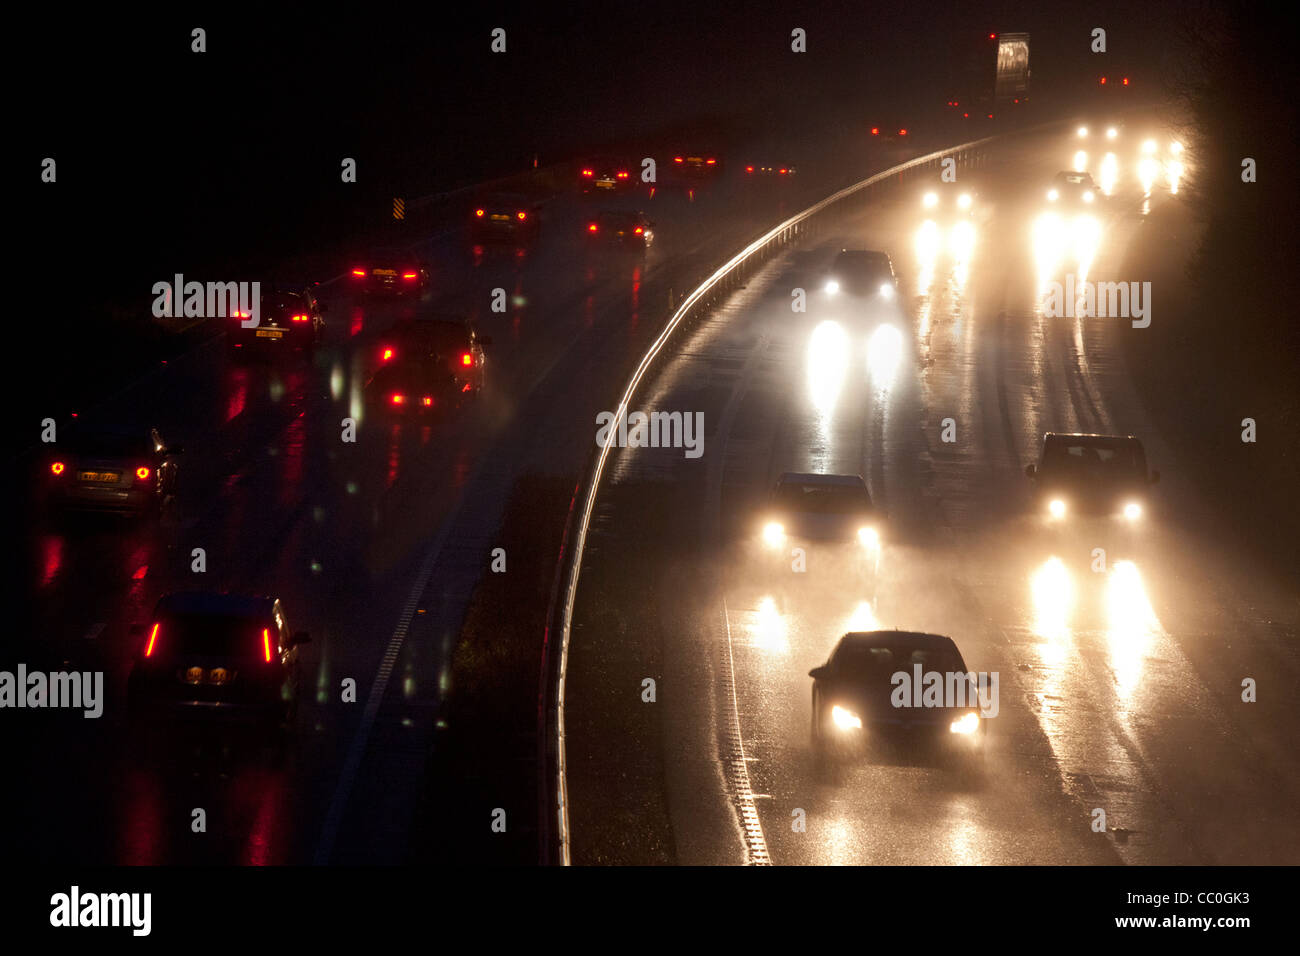 Voitures et véhicules la nuit sur deux voies, en mauvaise visibilité humide conditions routières dangereuses, Oxfordshire, Angleterre Banque D'Images